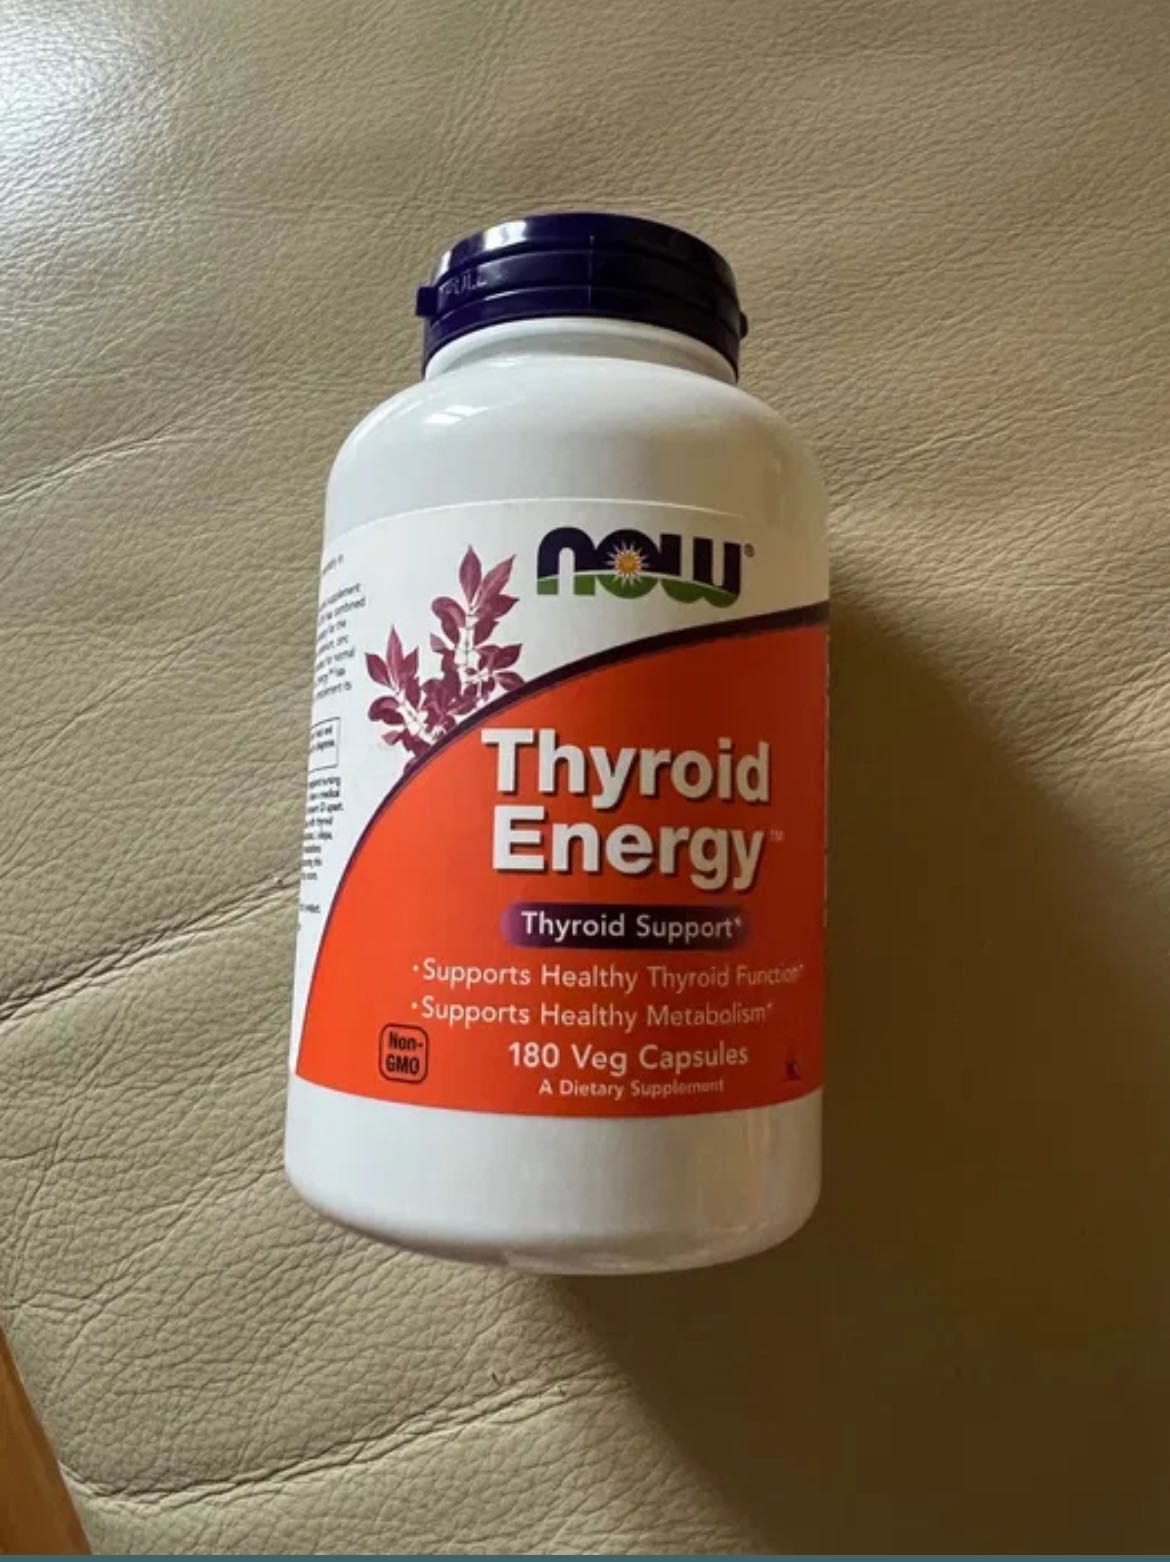 Thyroid Energy /тироїд енерджі, підтримка щитовидної залози,
180капсул